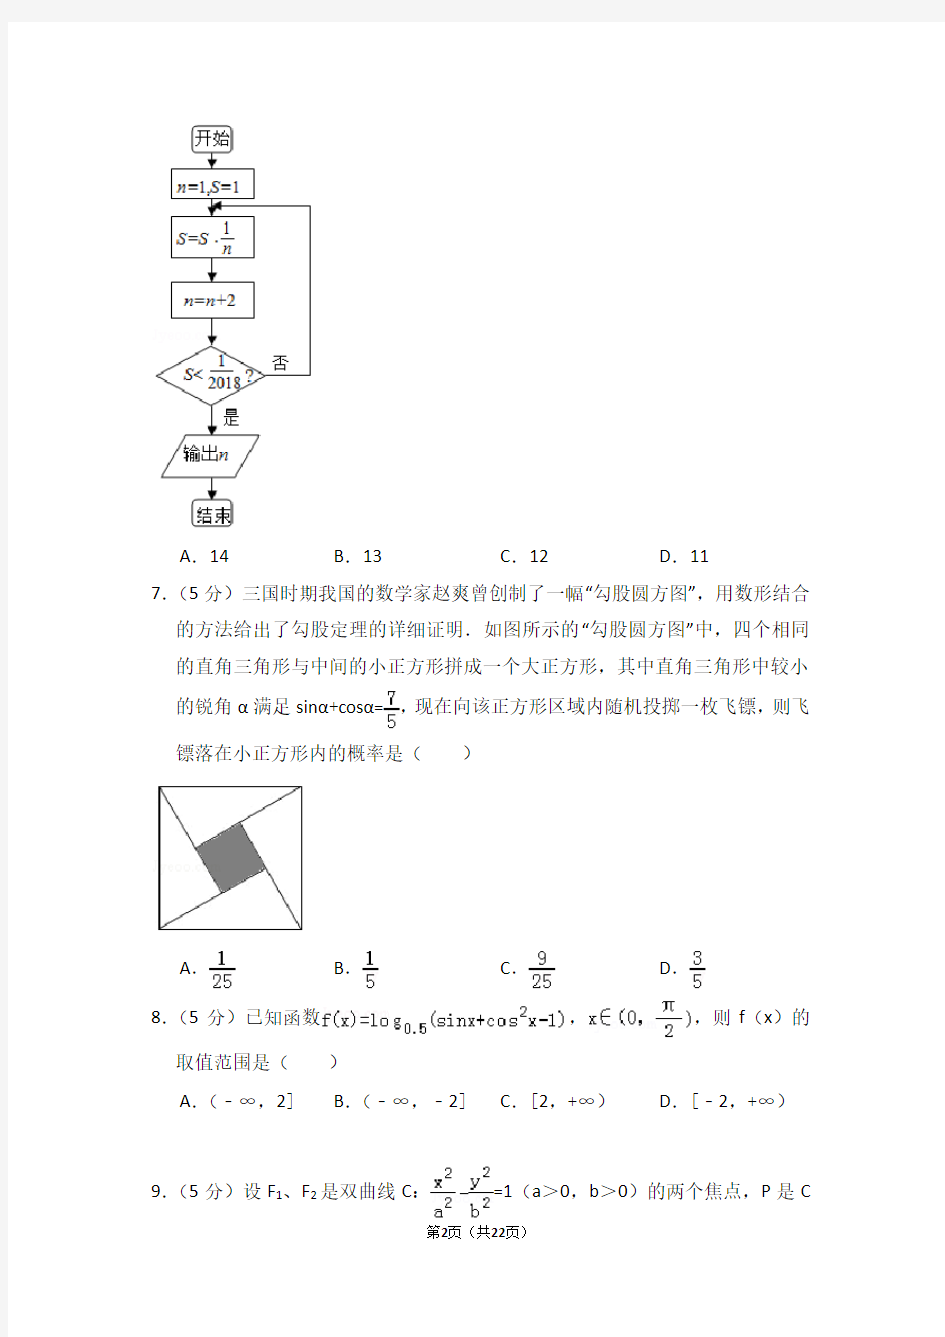 (完整版)2018年河南省高考数学模拟试卷(理科)(4月份)